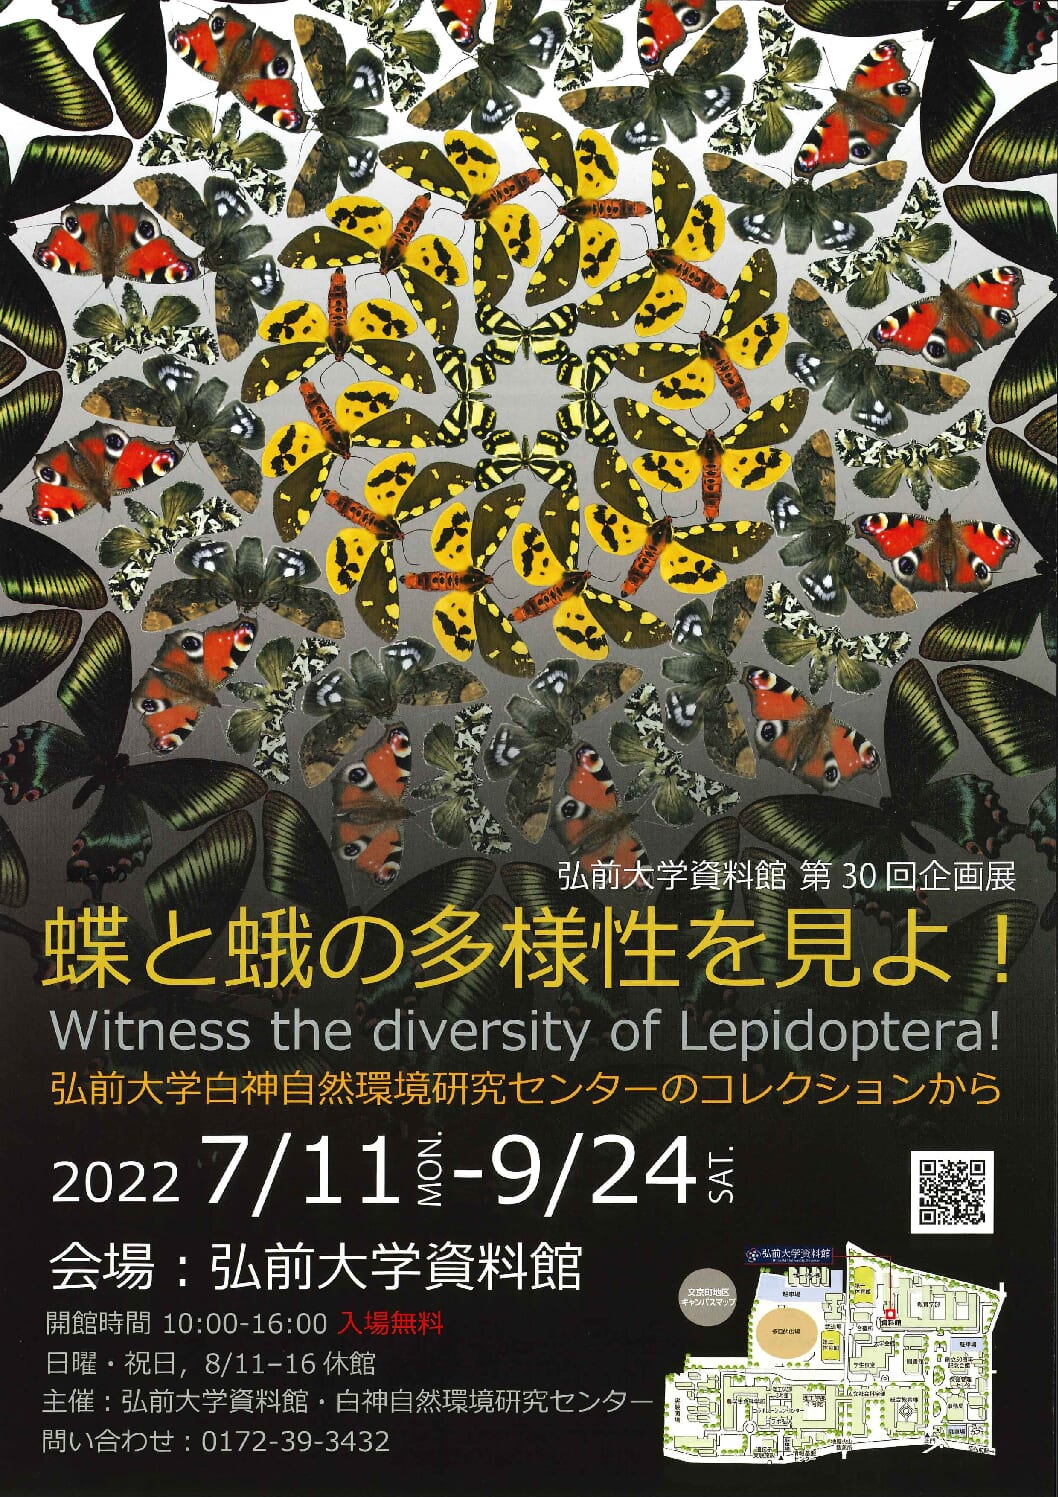 現在開催中の弘前大学資料館第３０回企画展「蝶と蛾の多様性を見よ！」の開催期間を９月２４日（土）から１０月２９日（土）まで延長いたします。